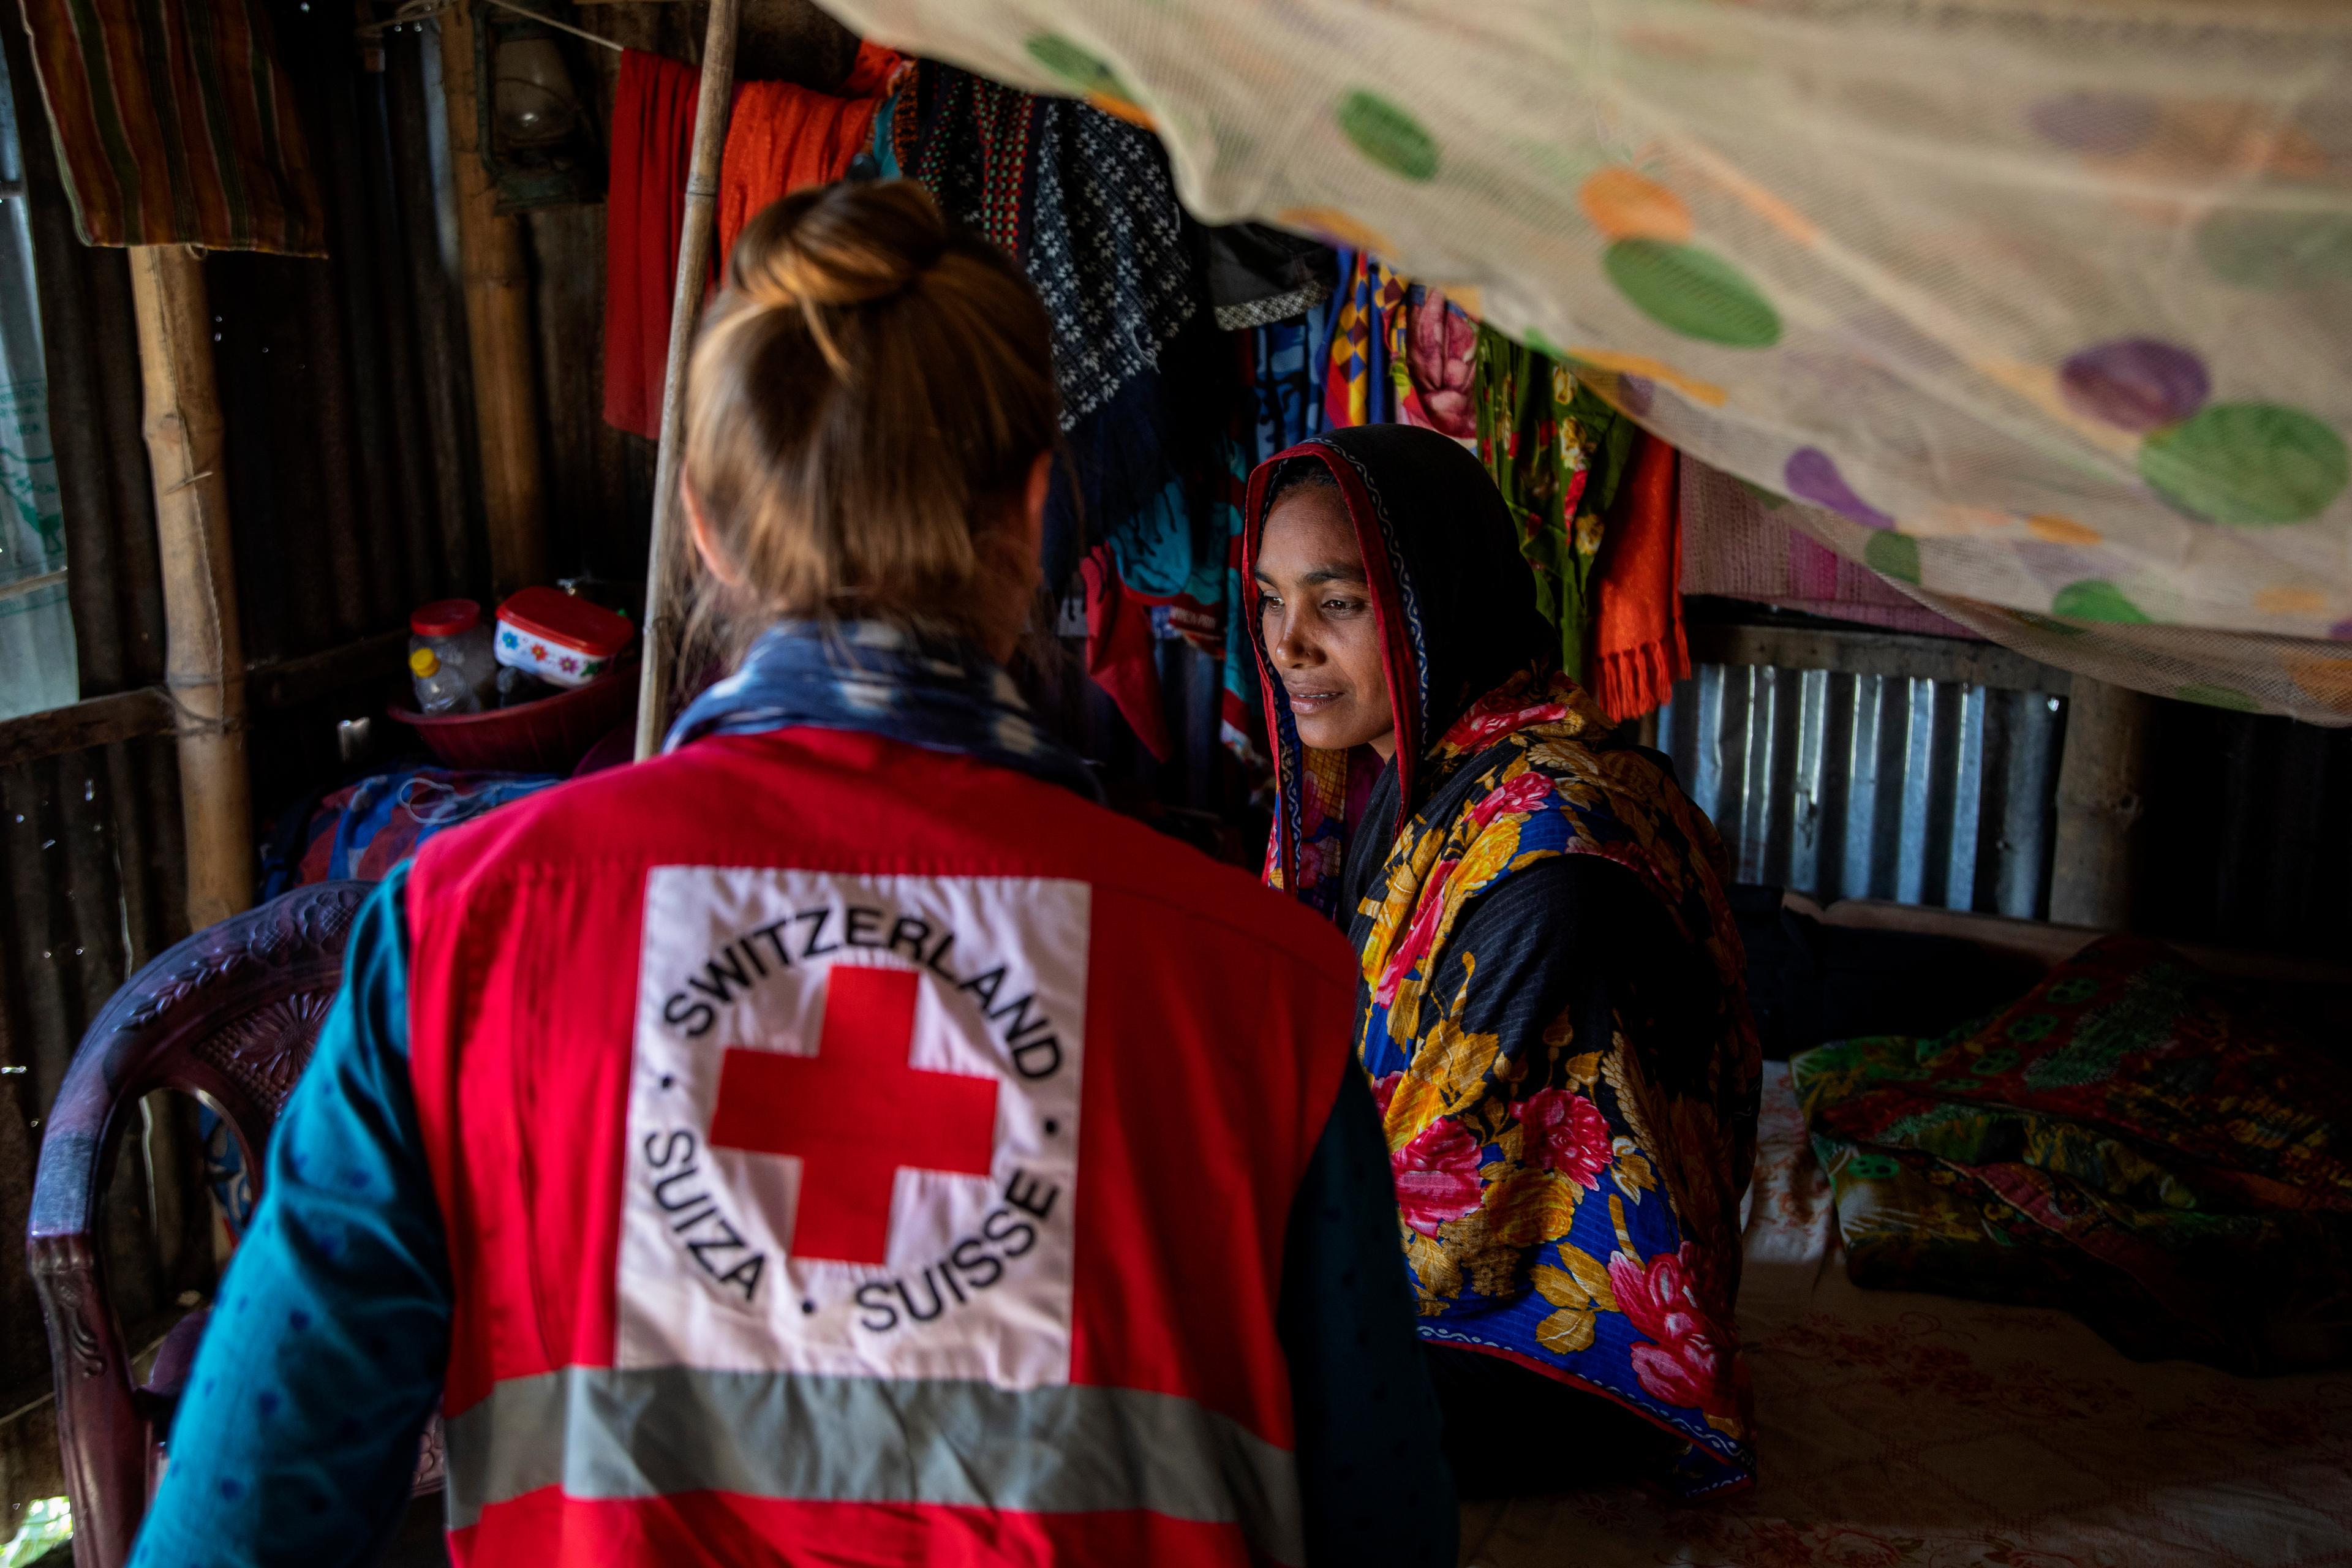 Zwei Frauen sitzen beeinander. Sie befinden sich in einer Wellblechhütte. Eine Frau trägt ein Tuch mit Blumen über Kopf und Oberkörper. Die zweite trägt eine rote Weste mit dem Schweizerischen Roten Kreuz auf dem Rücken.